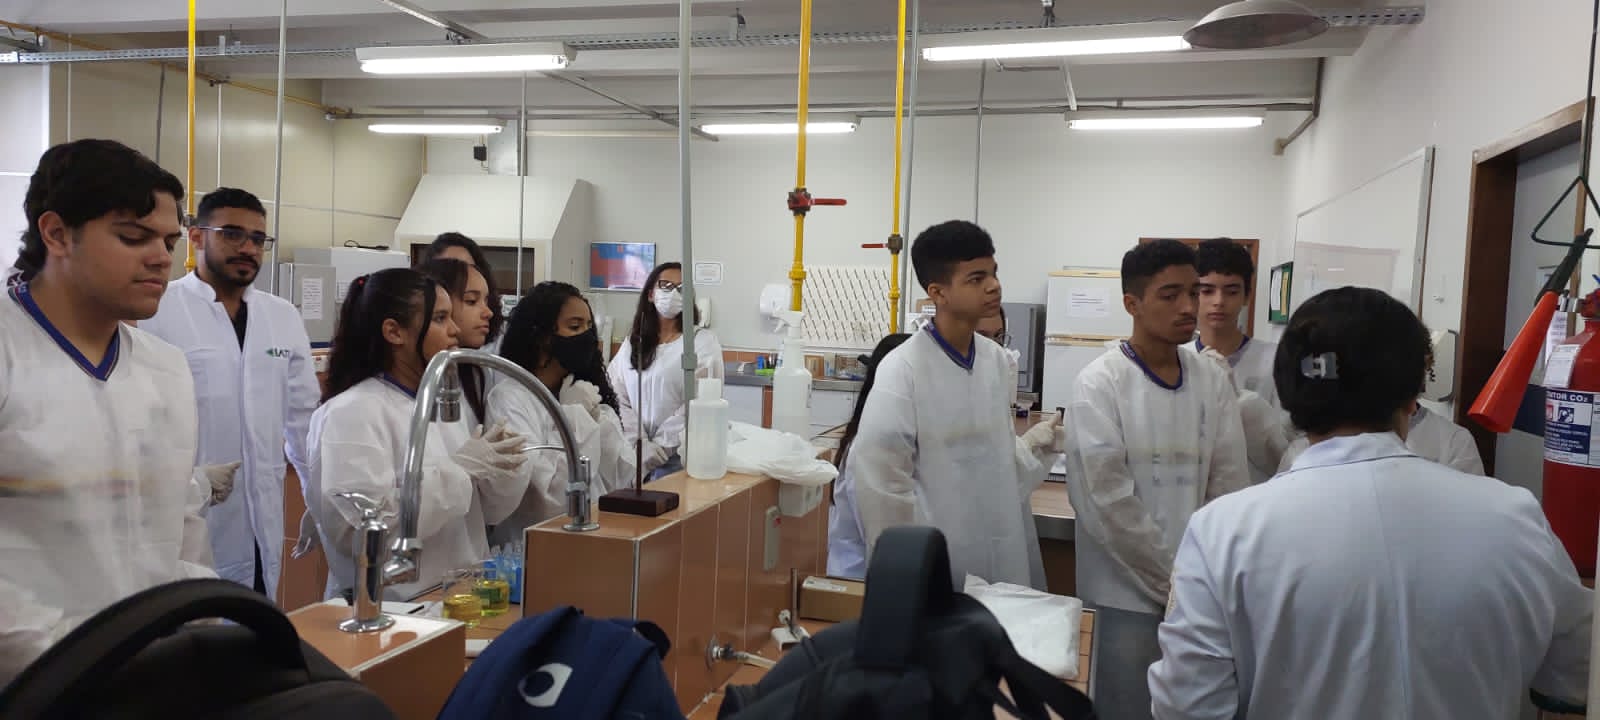 Estudantes no laboratório